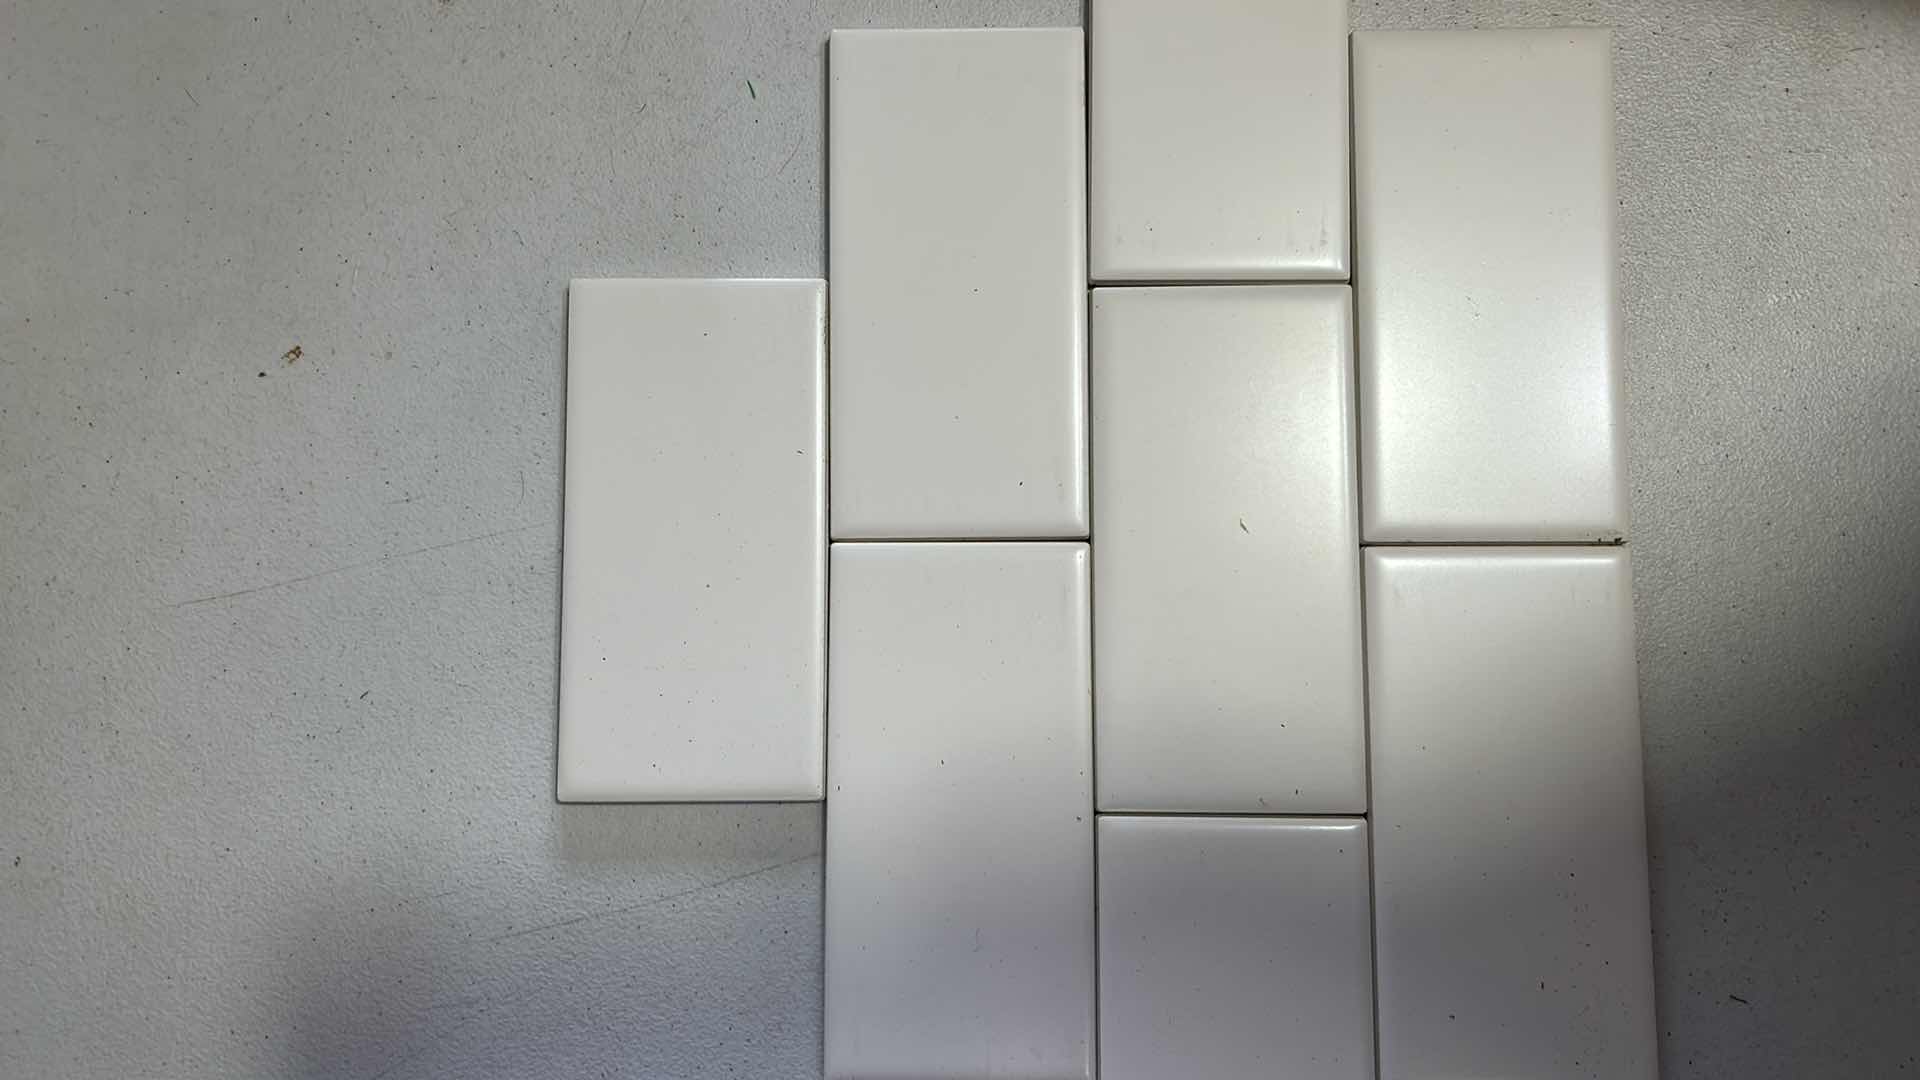 Photo 5 of 7 CASES - NEW DALTILE MATTE ARTIC WHITE 3" X 6" MODULAR  SUBWAY TILE $53.63 CASE 700 pcs TOTAL